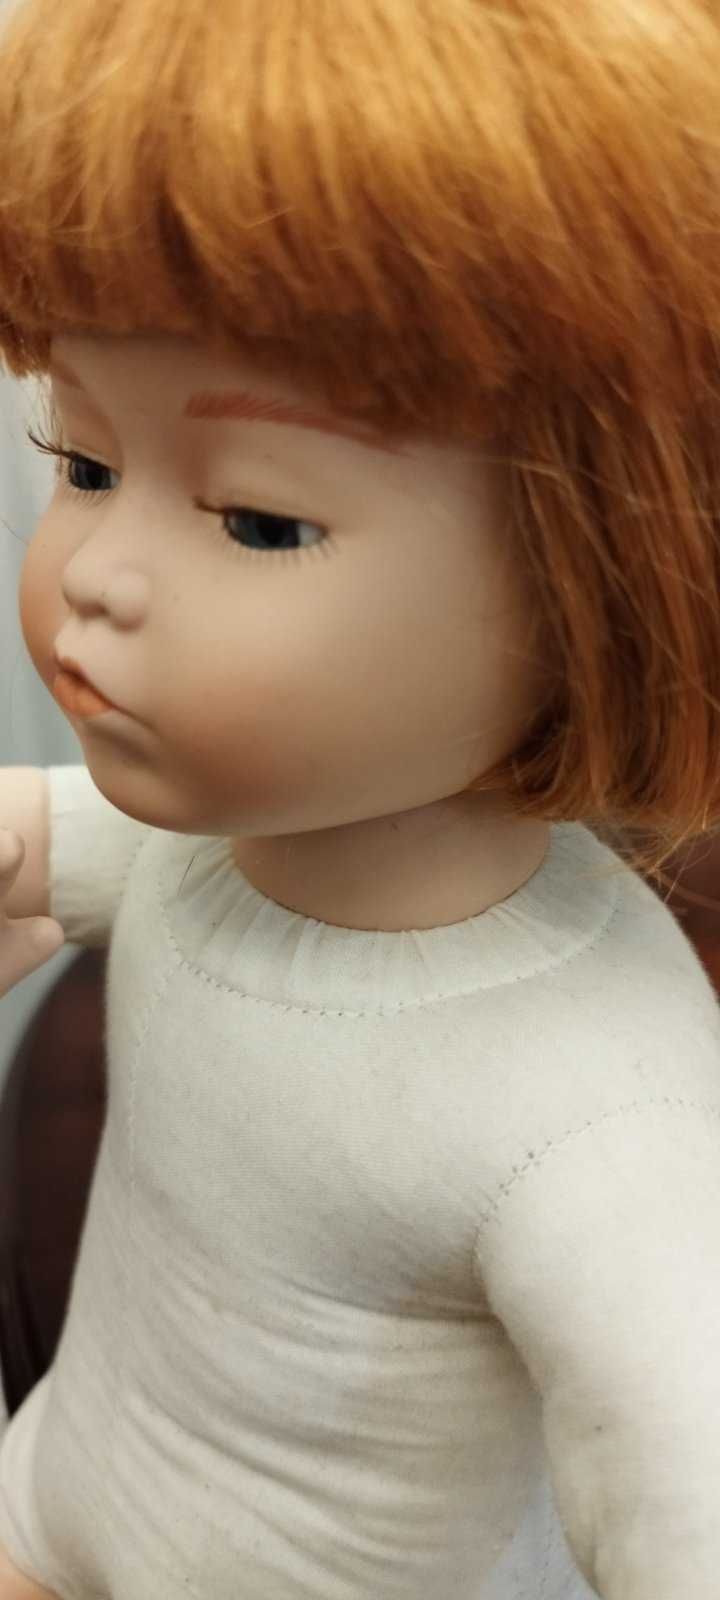 Немецкая коллекционная кукла"Девочка с каре"сидит. Высота-37см.